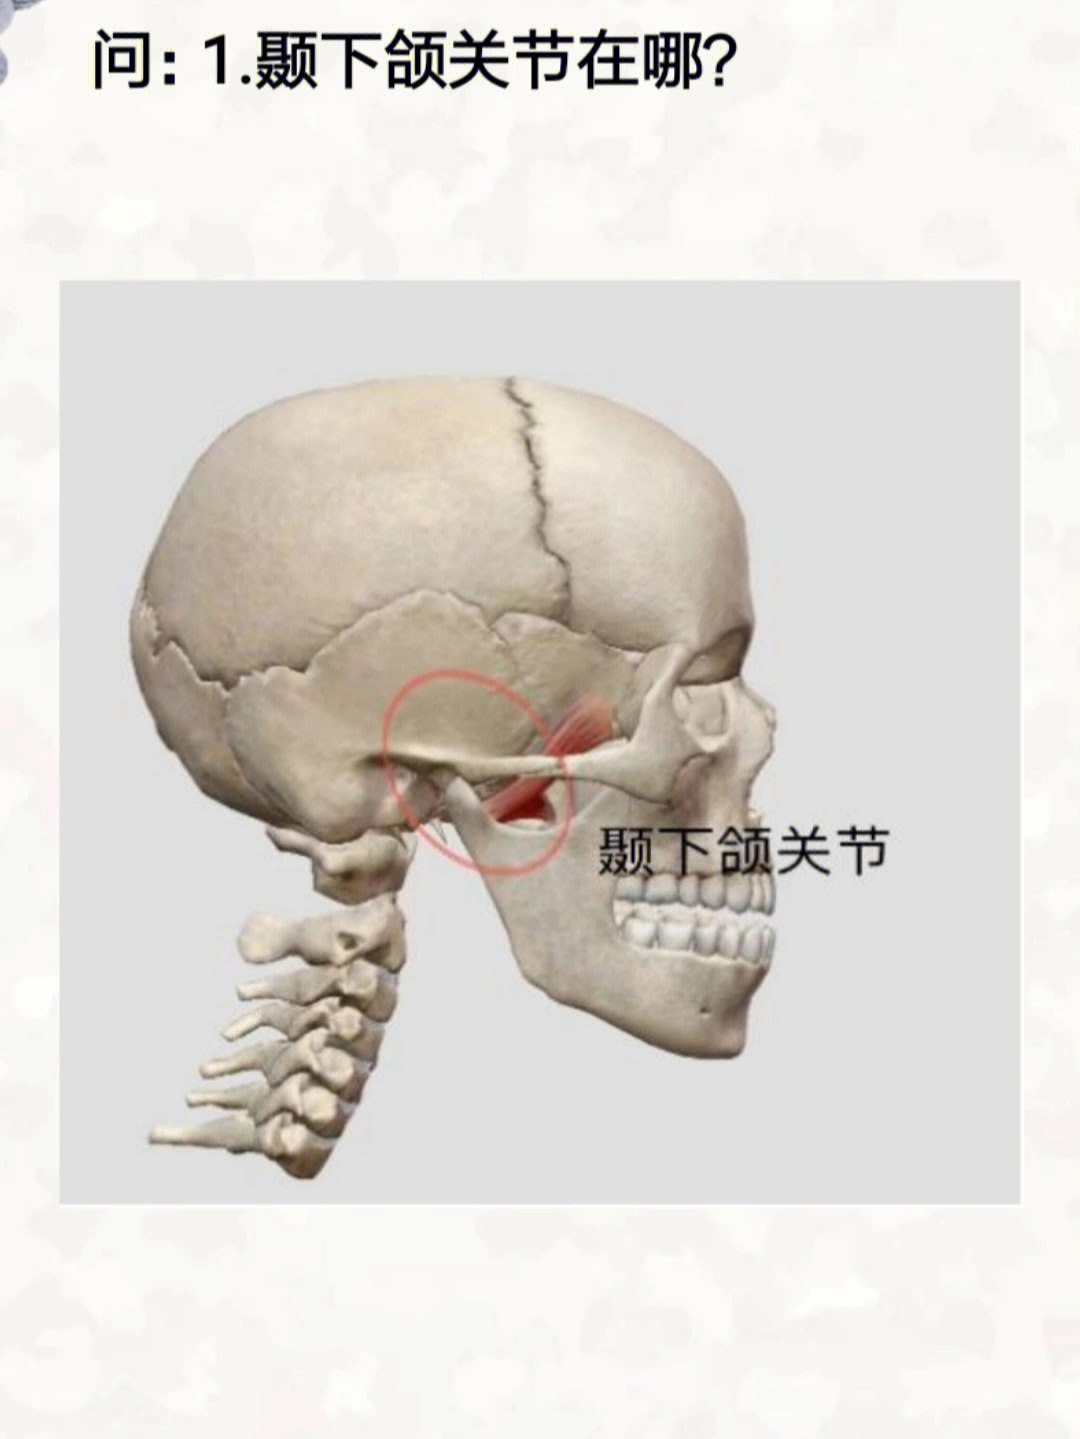 颞下颌关节有弹响92张口过大时, 颞下颌关节被卡住92开/闭口困难